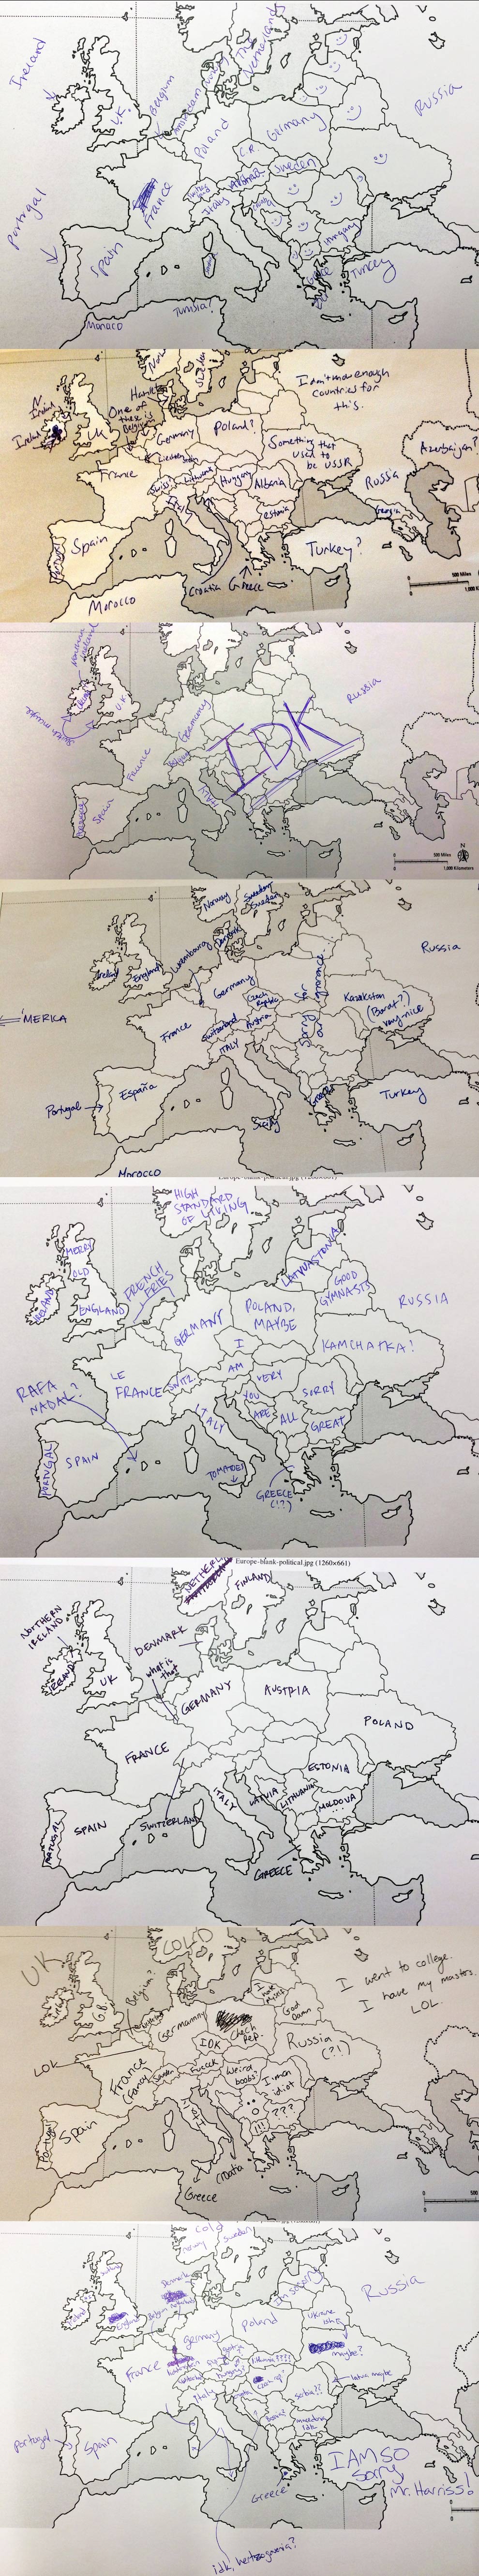 Europa według Amerykanów 